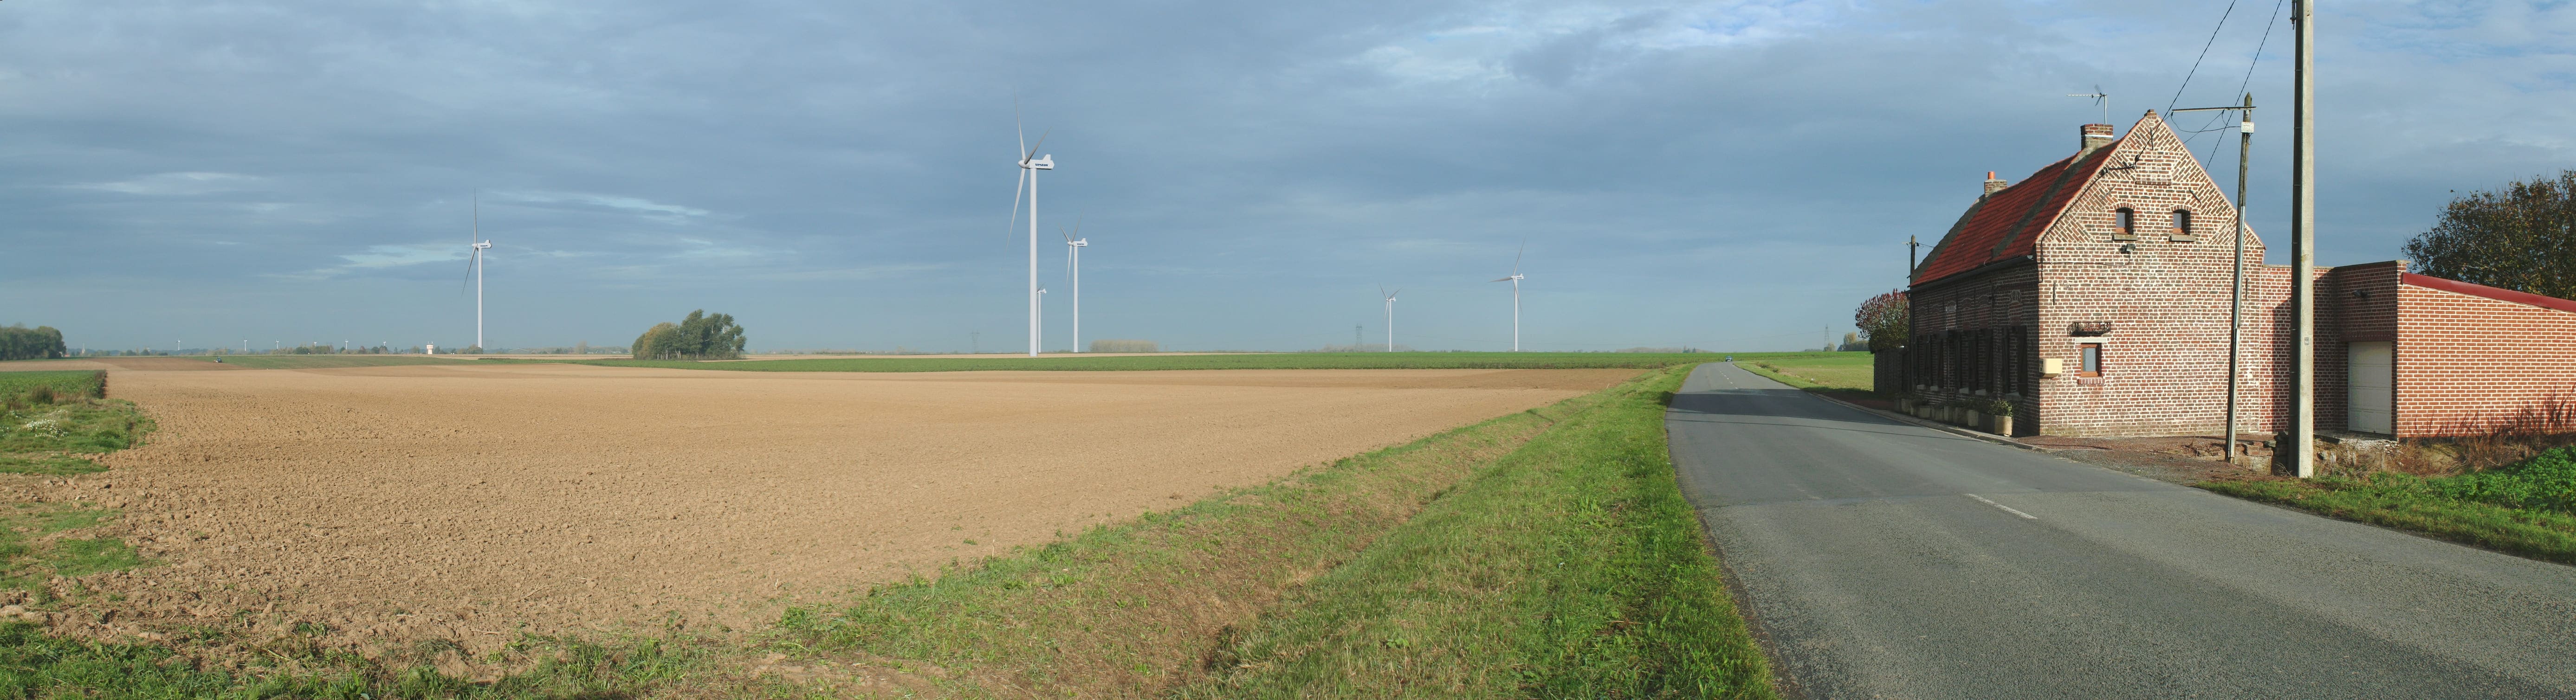   projet éolien d’Ostrevent